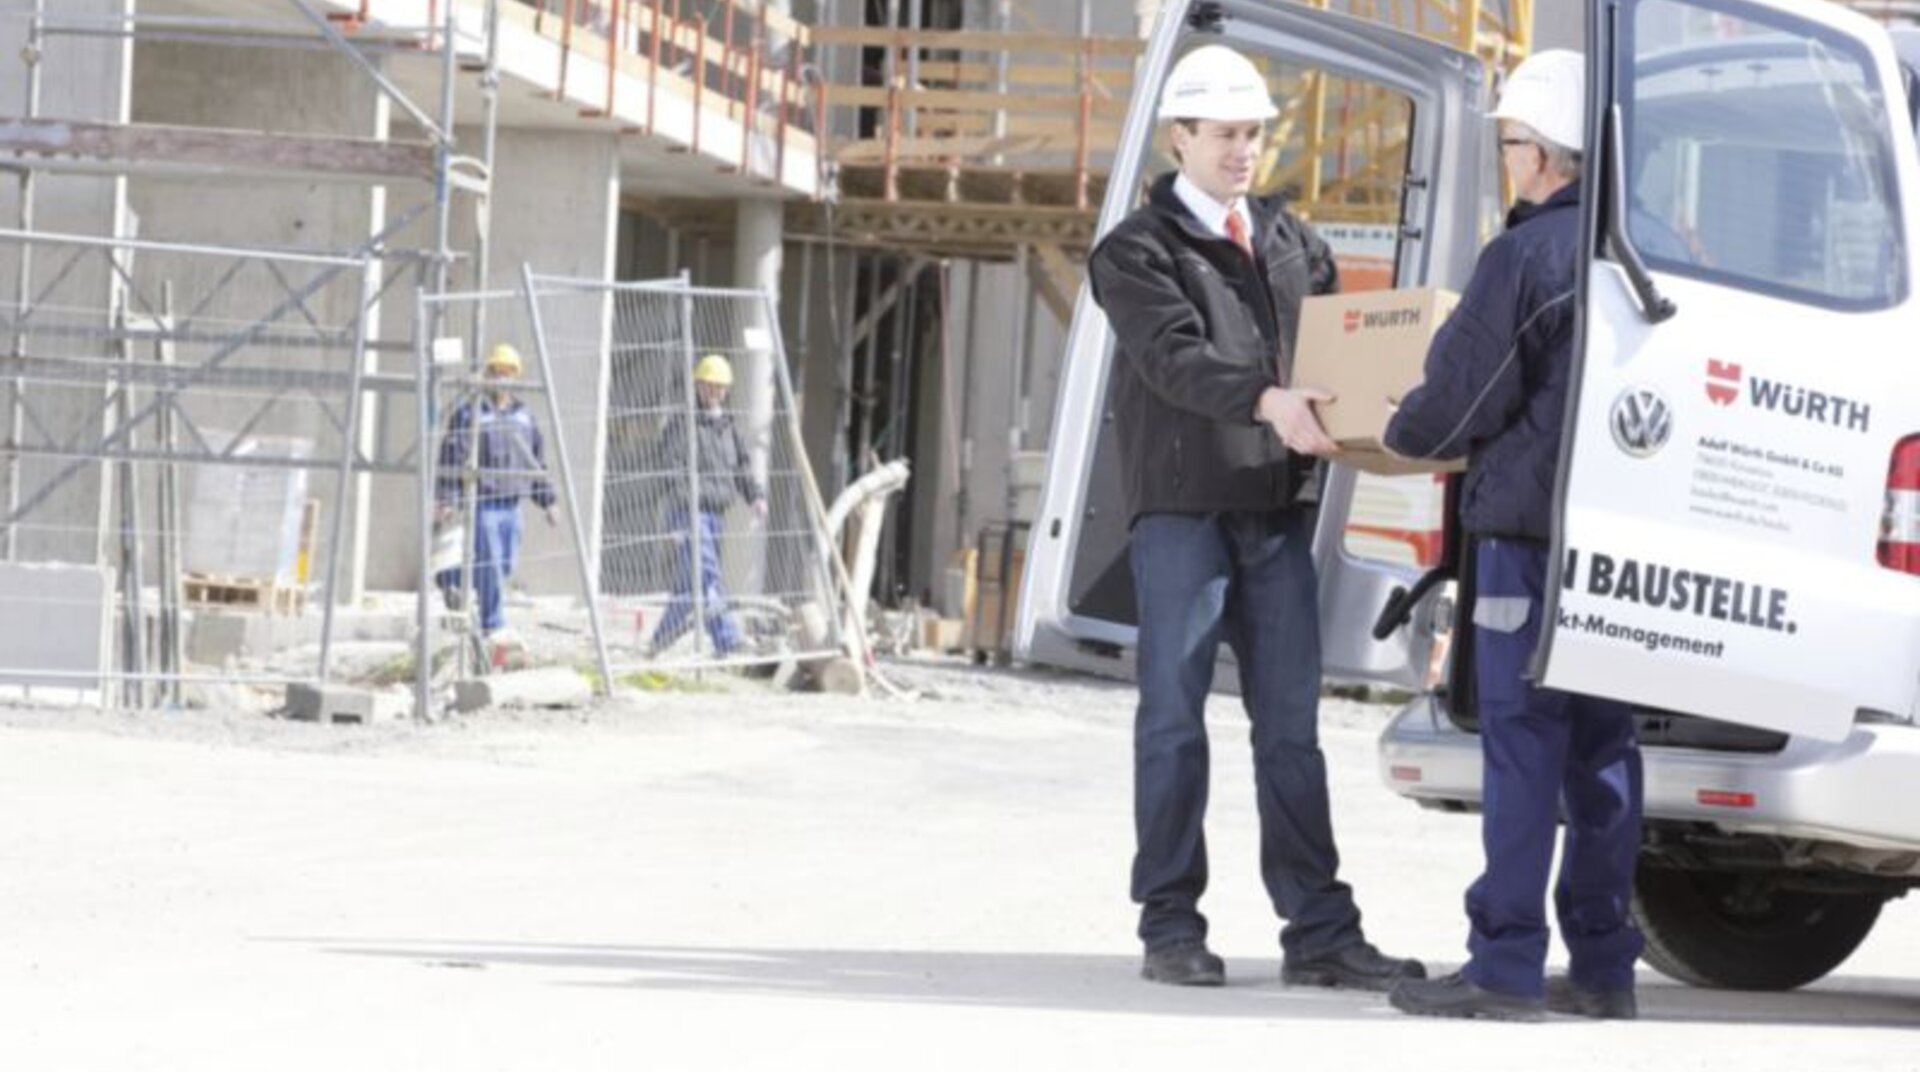 Baustellen Service, Übergabe eines Würth-Pakets vor einer Baustelle